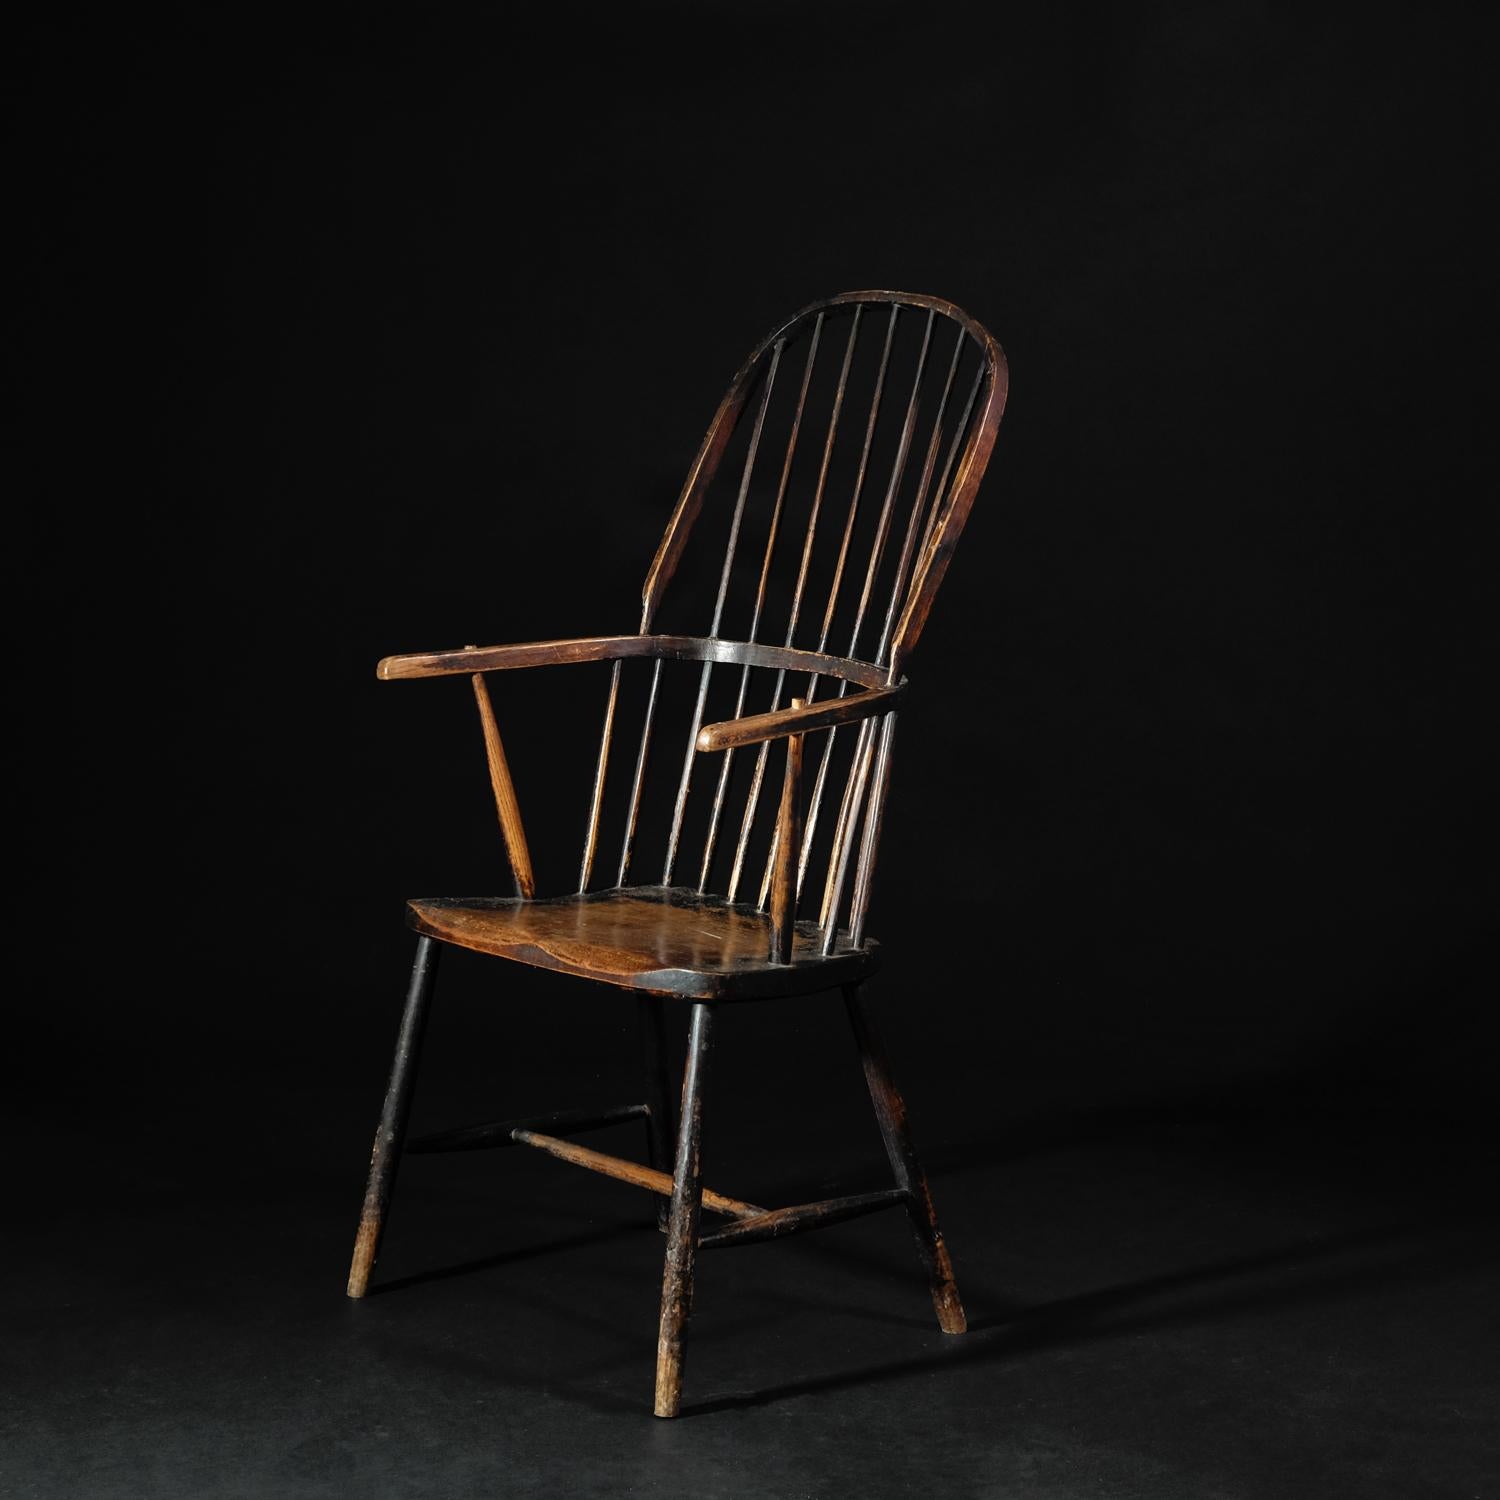 Rare exemple très original d'un fauteuil Windsor de la campagne occidentale du début du XIXe siècle. Pieds fuselés unis reliés par une entretoise en forme de H. Le siège en orme massif avec une forme de selle subtile. Deux supports de bras effilés